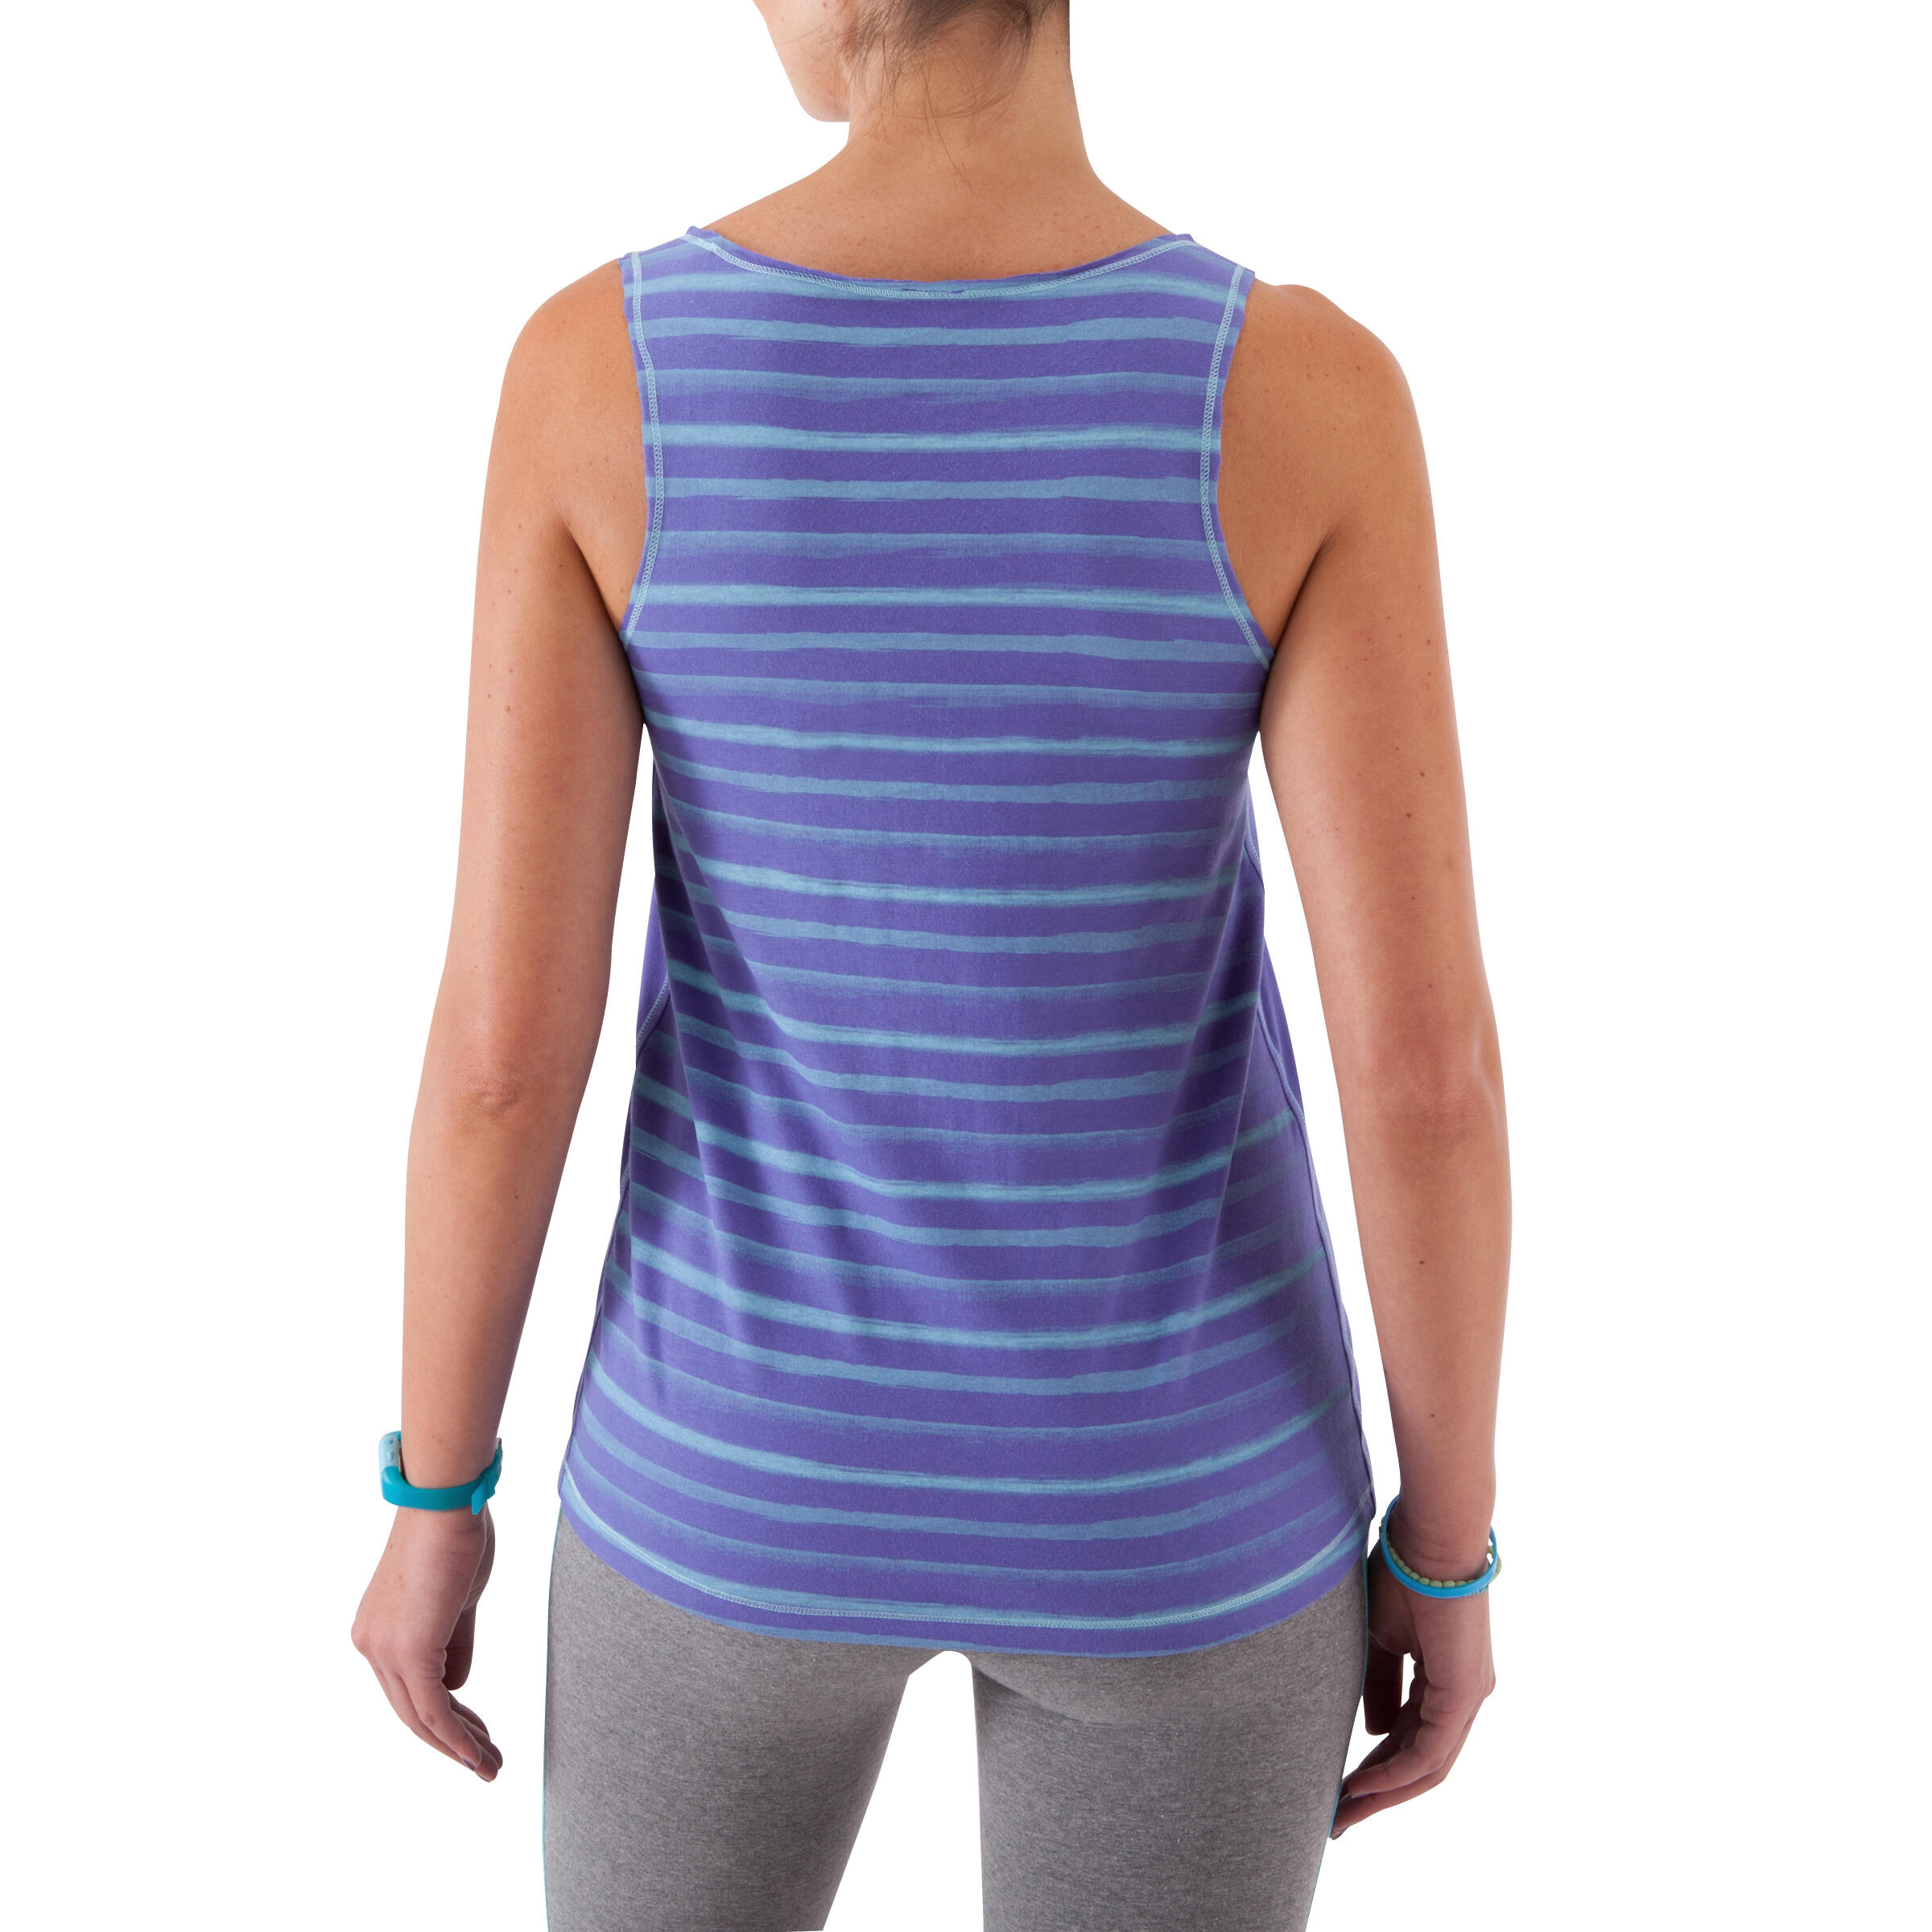 Women's Fitness Tank Top - Two-Toned Blue/Blue Stripe 6/12